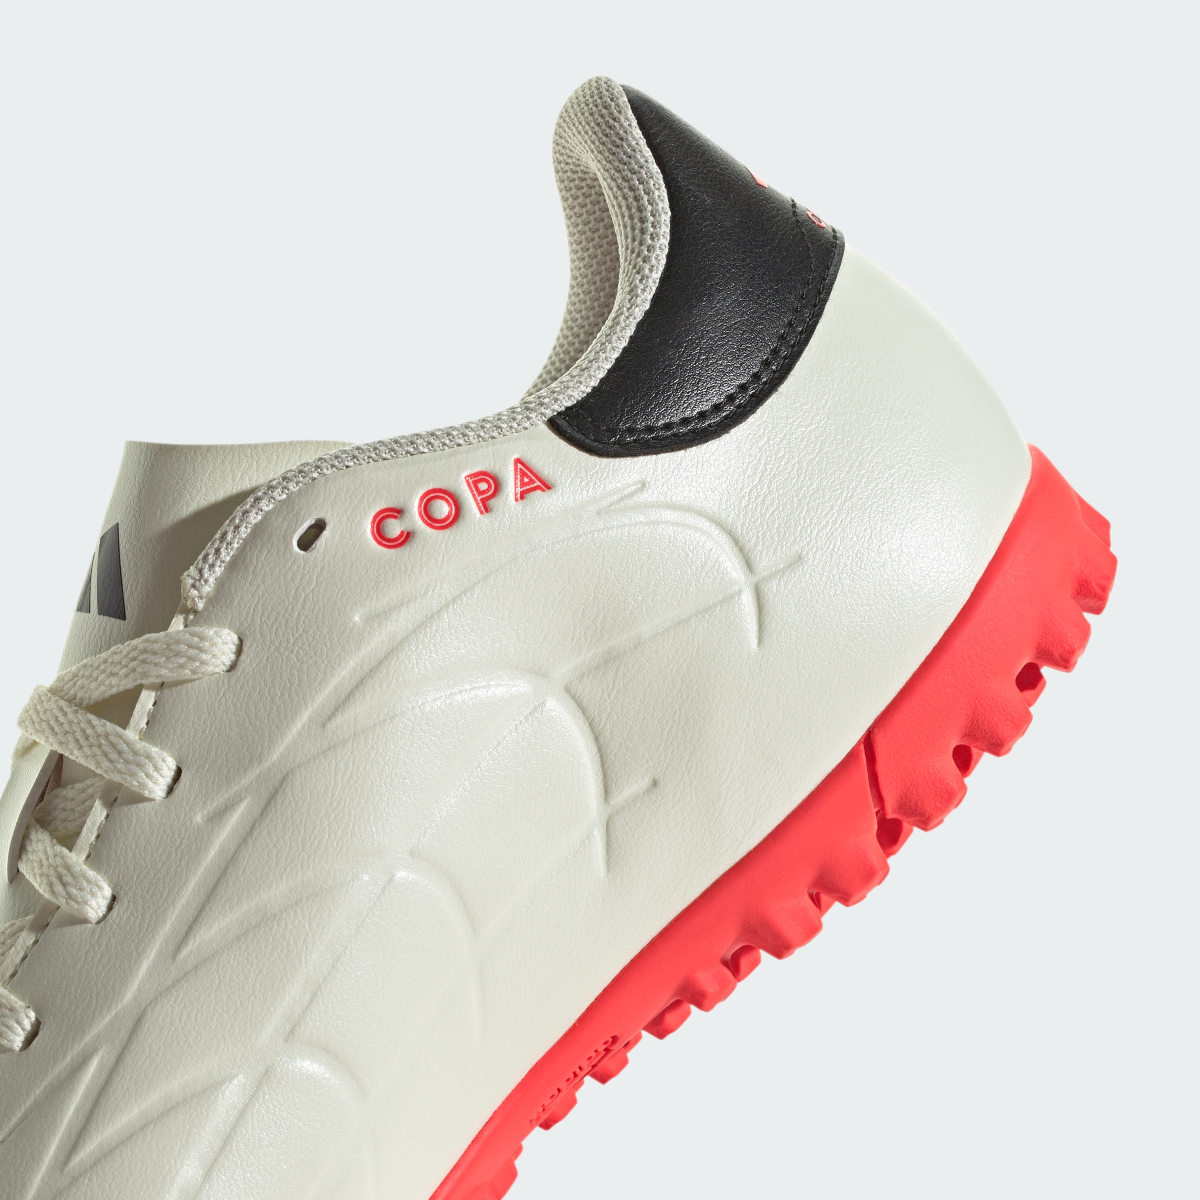 Adidas Copa Pure II Club Turf Boots. 9